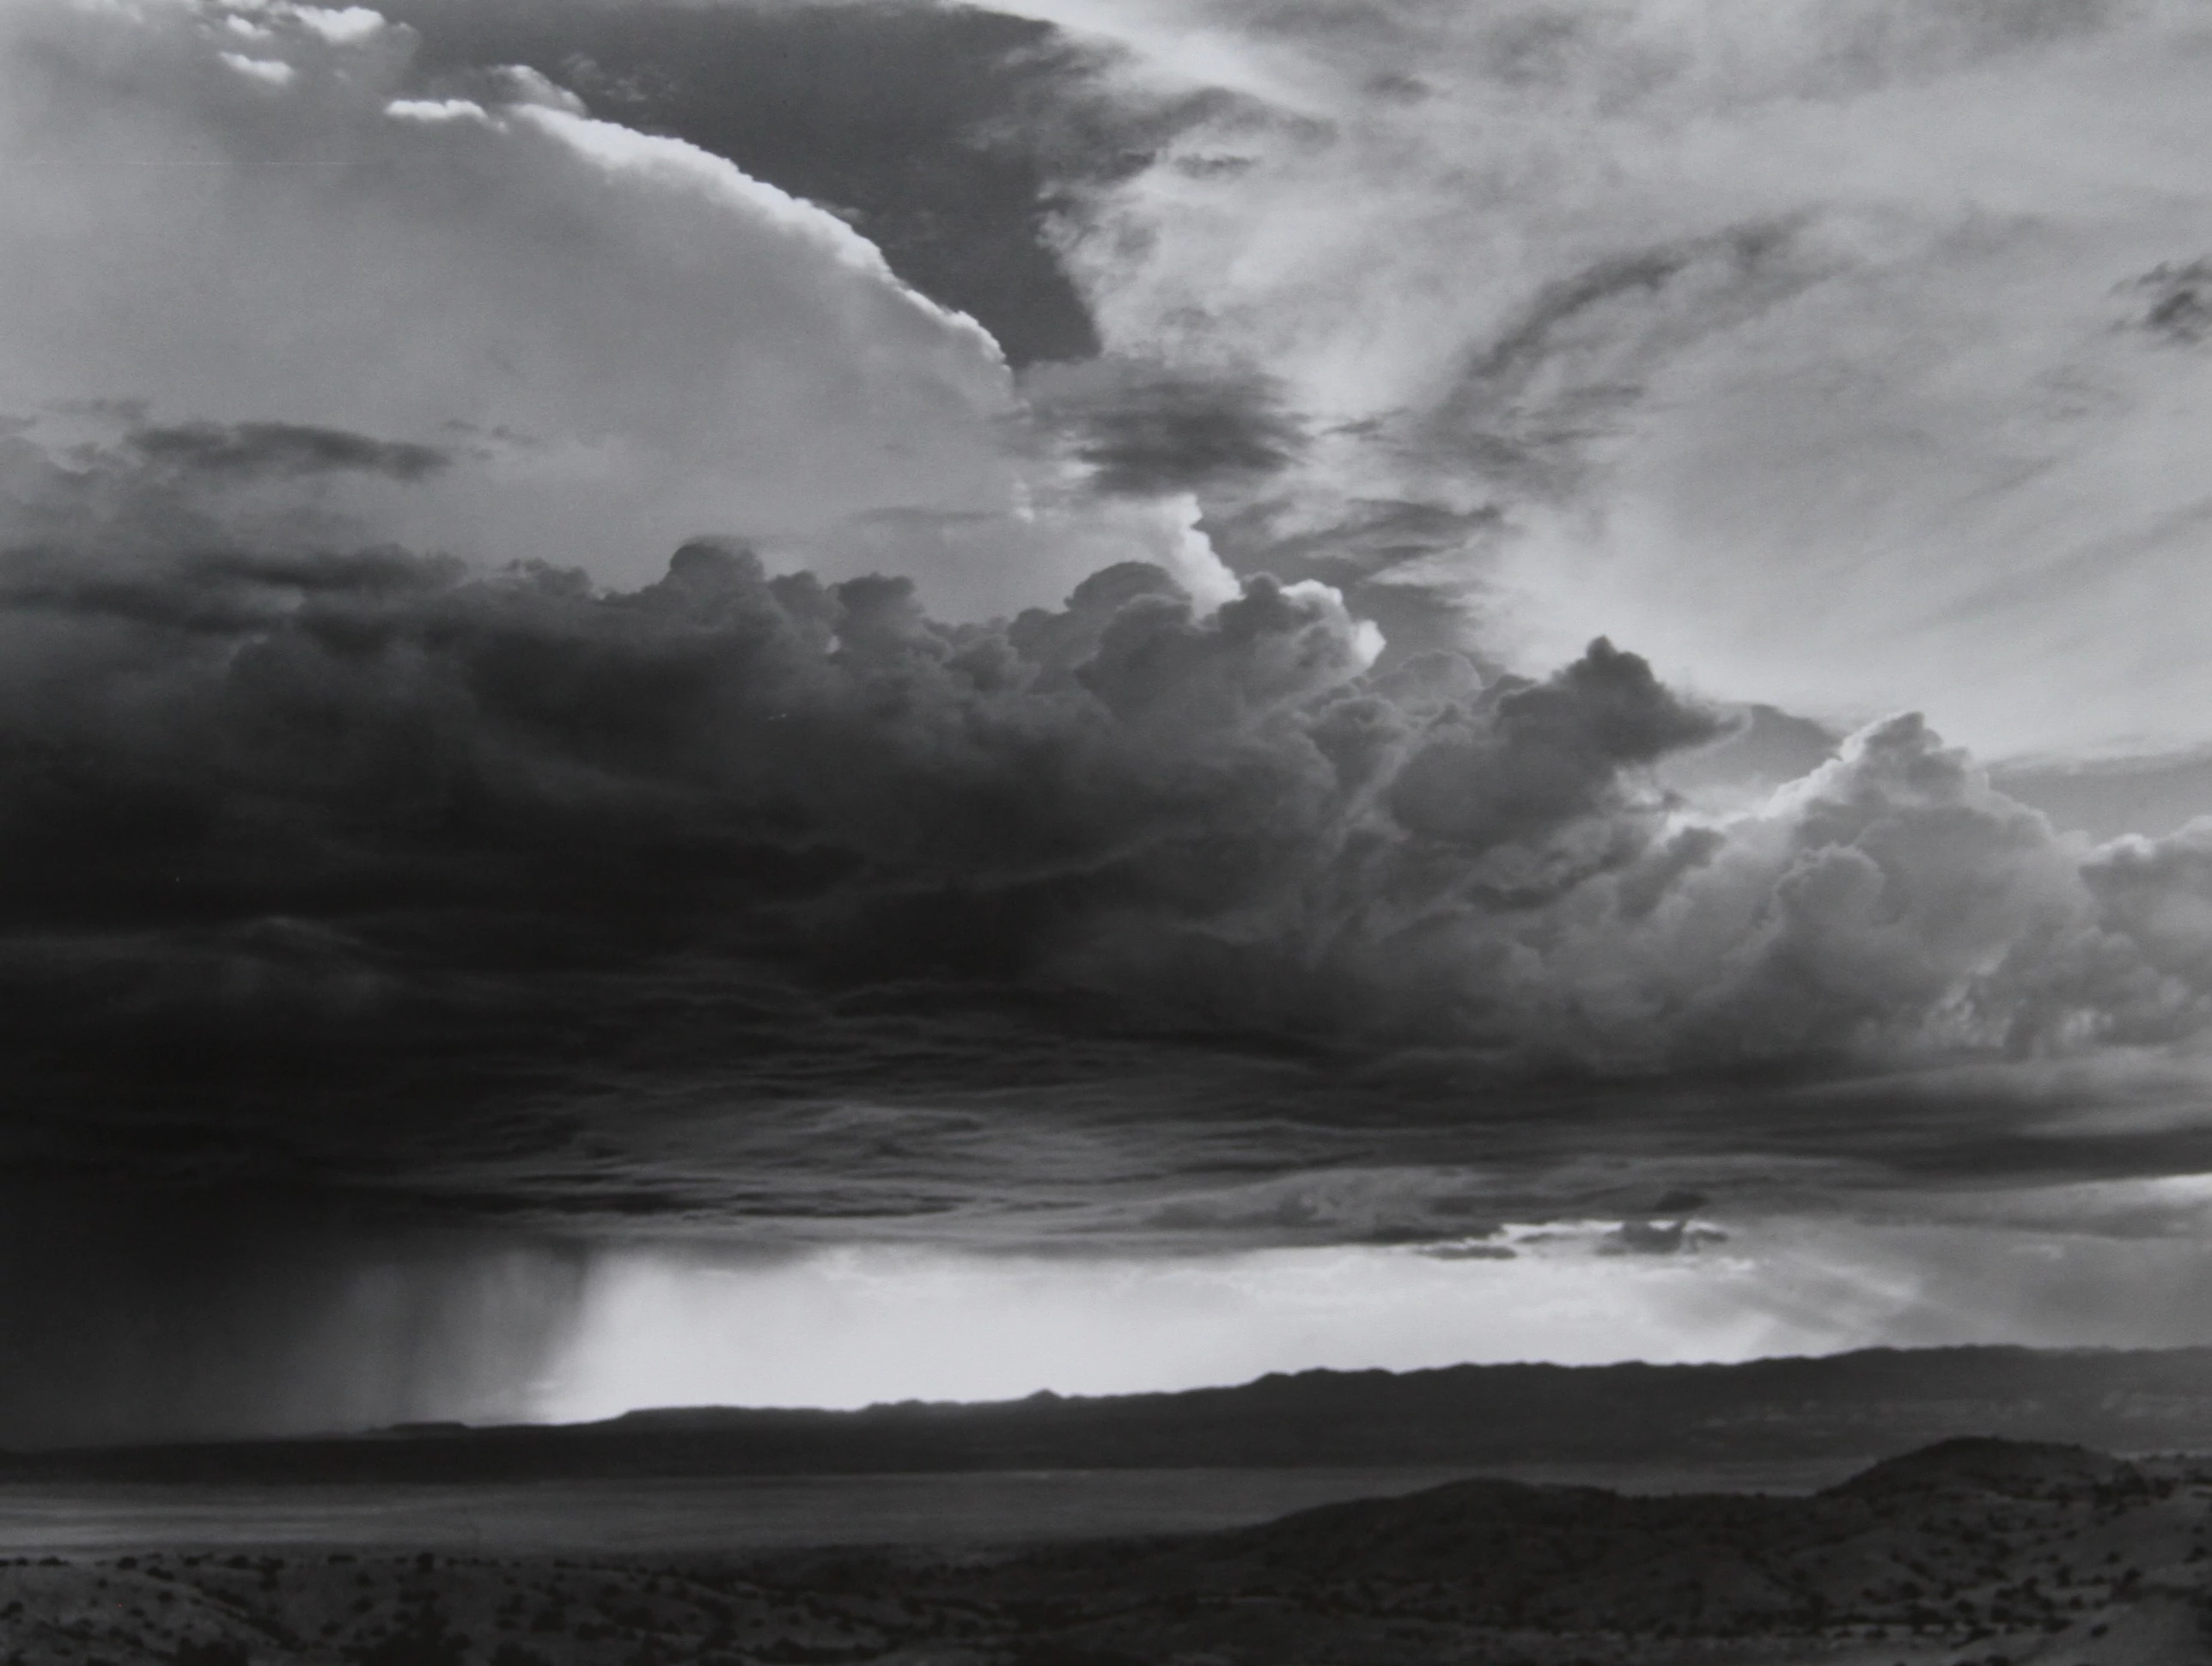 The Storm Over La Bajada, Laura Gilpin